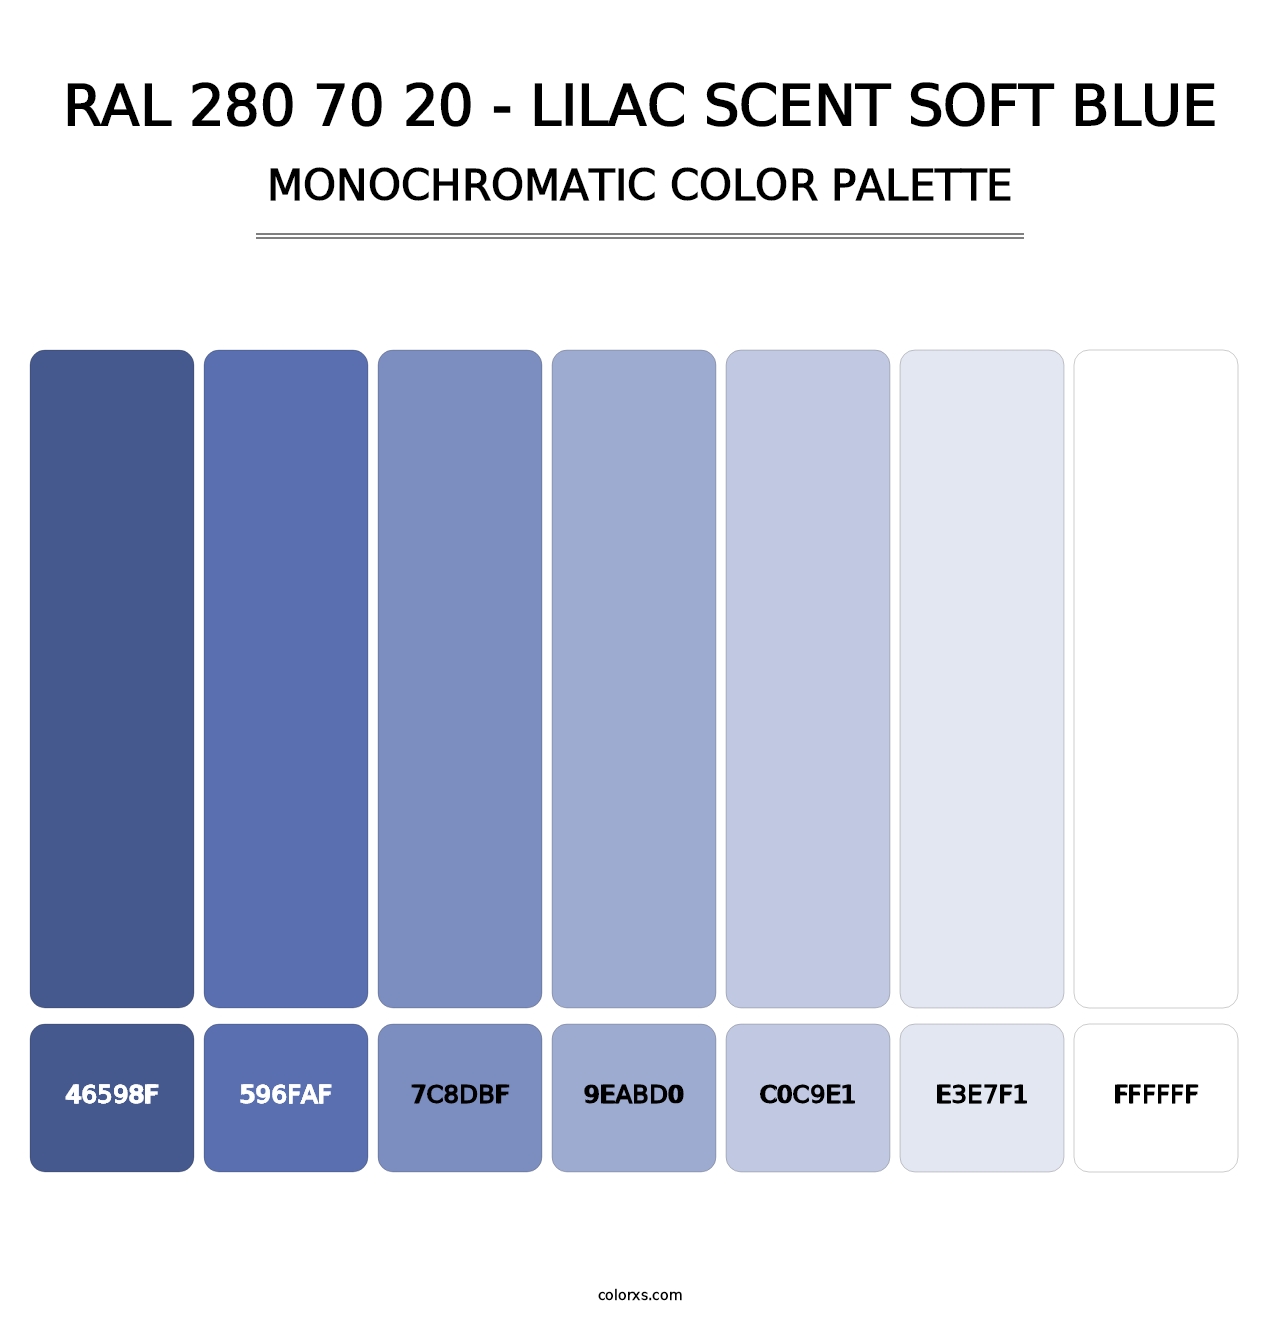 RAL 280 70 20 - Lilac Scent Soft Blue - Monochromatic Color Palette